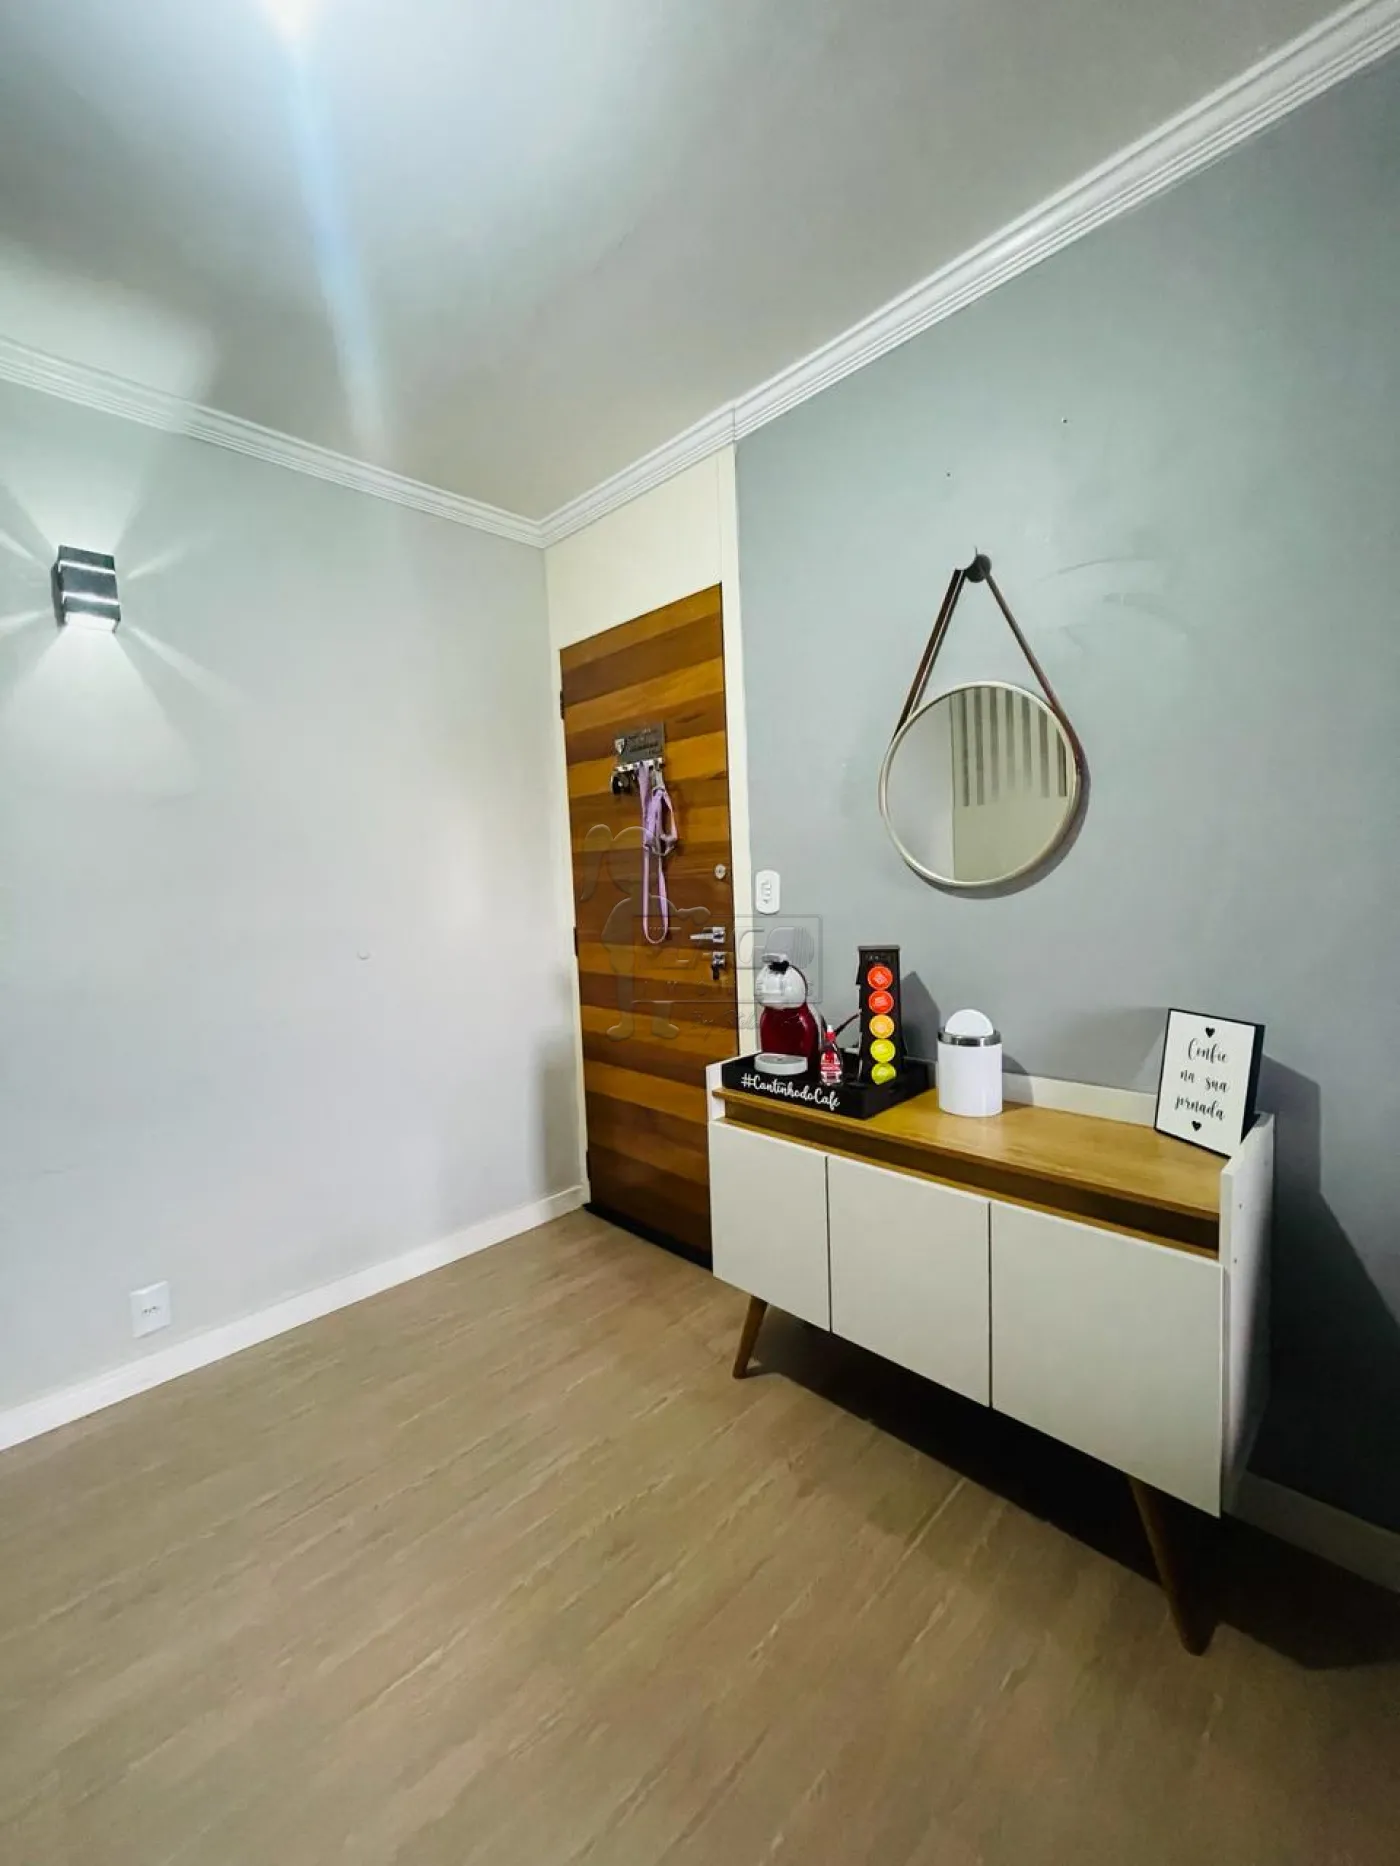 Alugar Apartamentos / Padrão em Ribeirão Preto R$ 100,00 - Foto 8